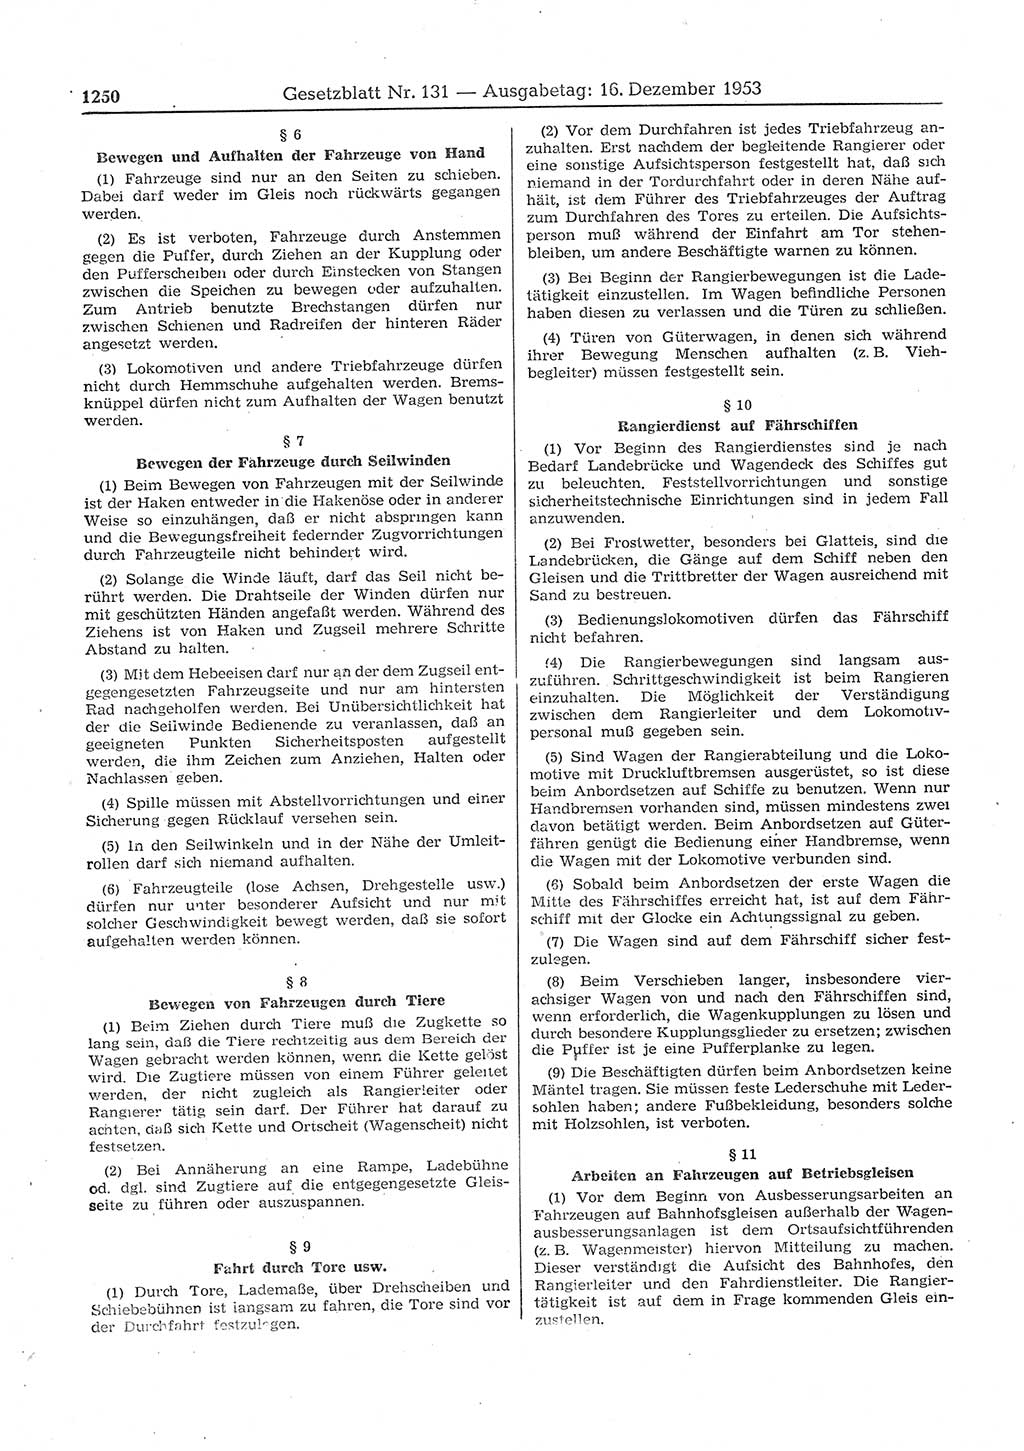 Gesetzblatt (GBl.) der Deutschen Demokratischen Republik (DDR) 1953, Seite 1250 (GBl. DDR 1953, S. 1250)